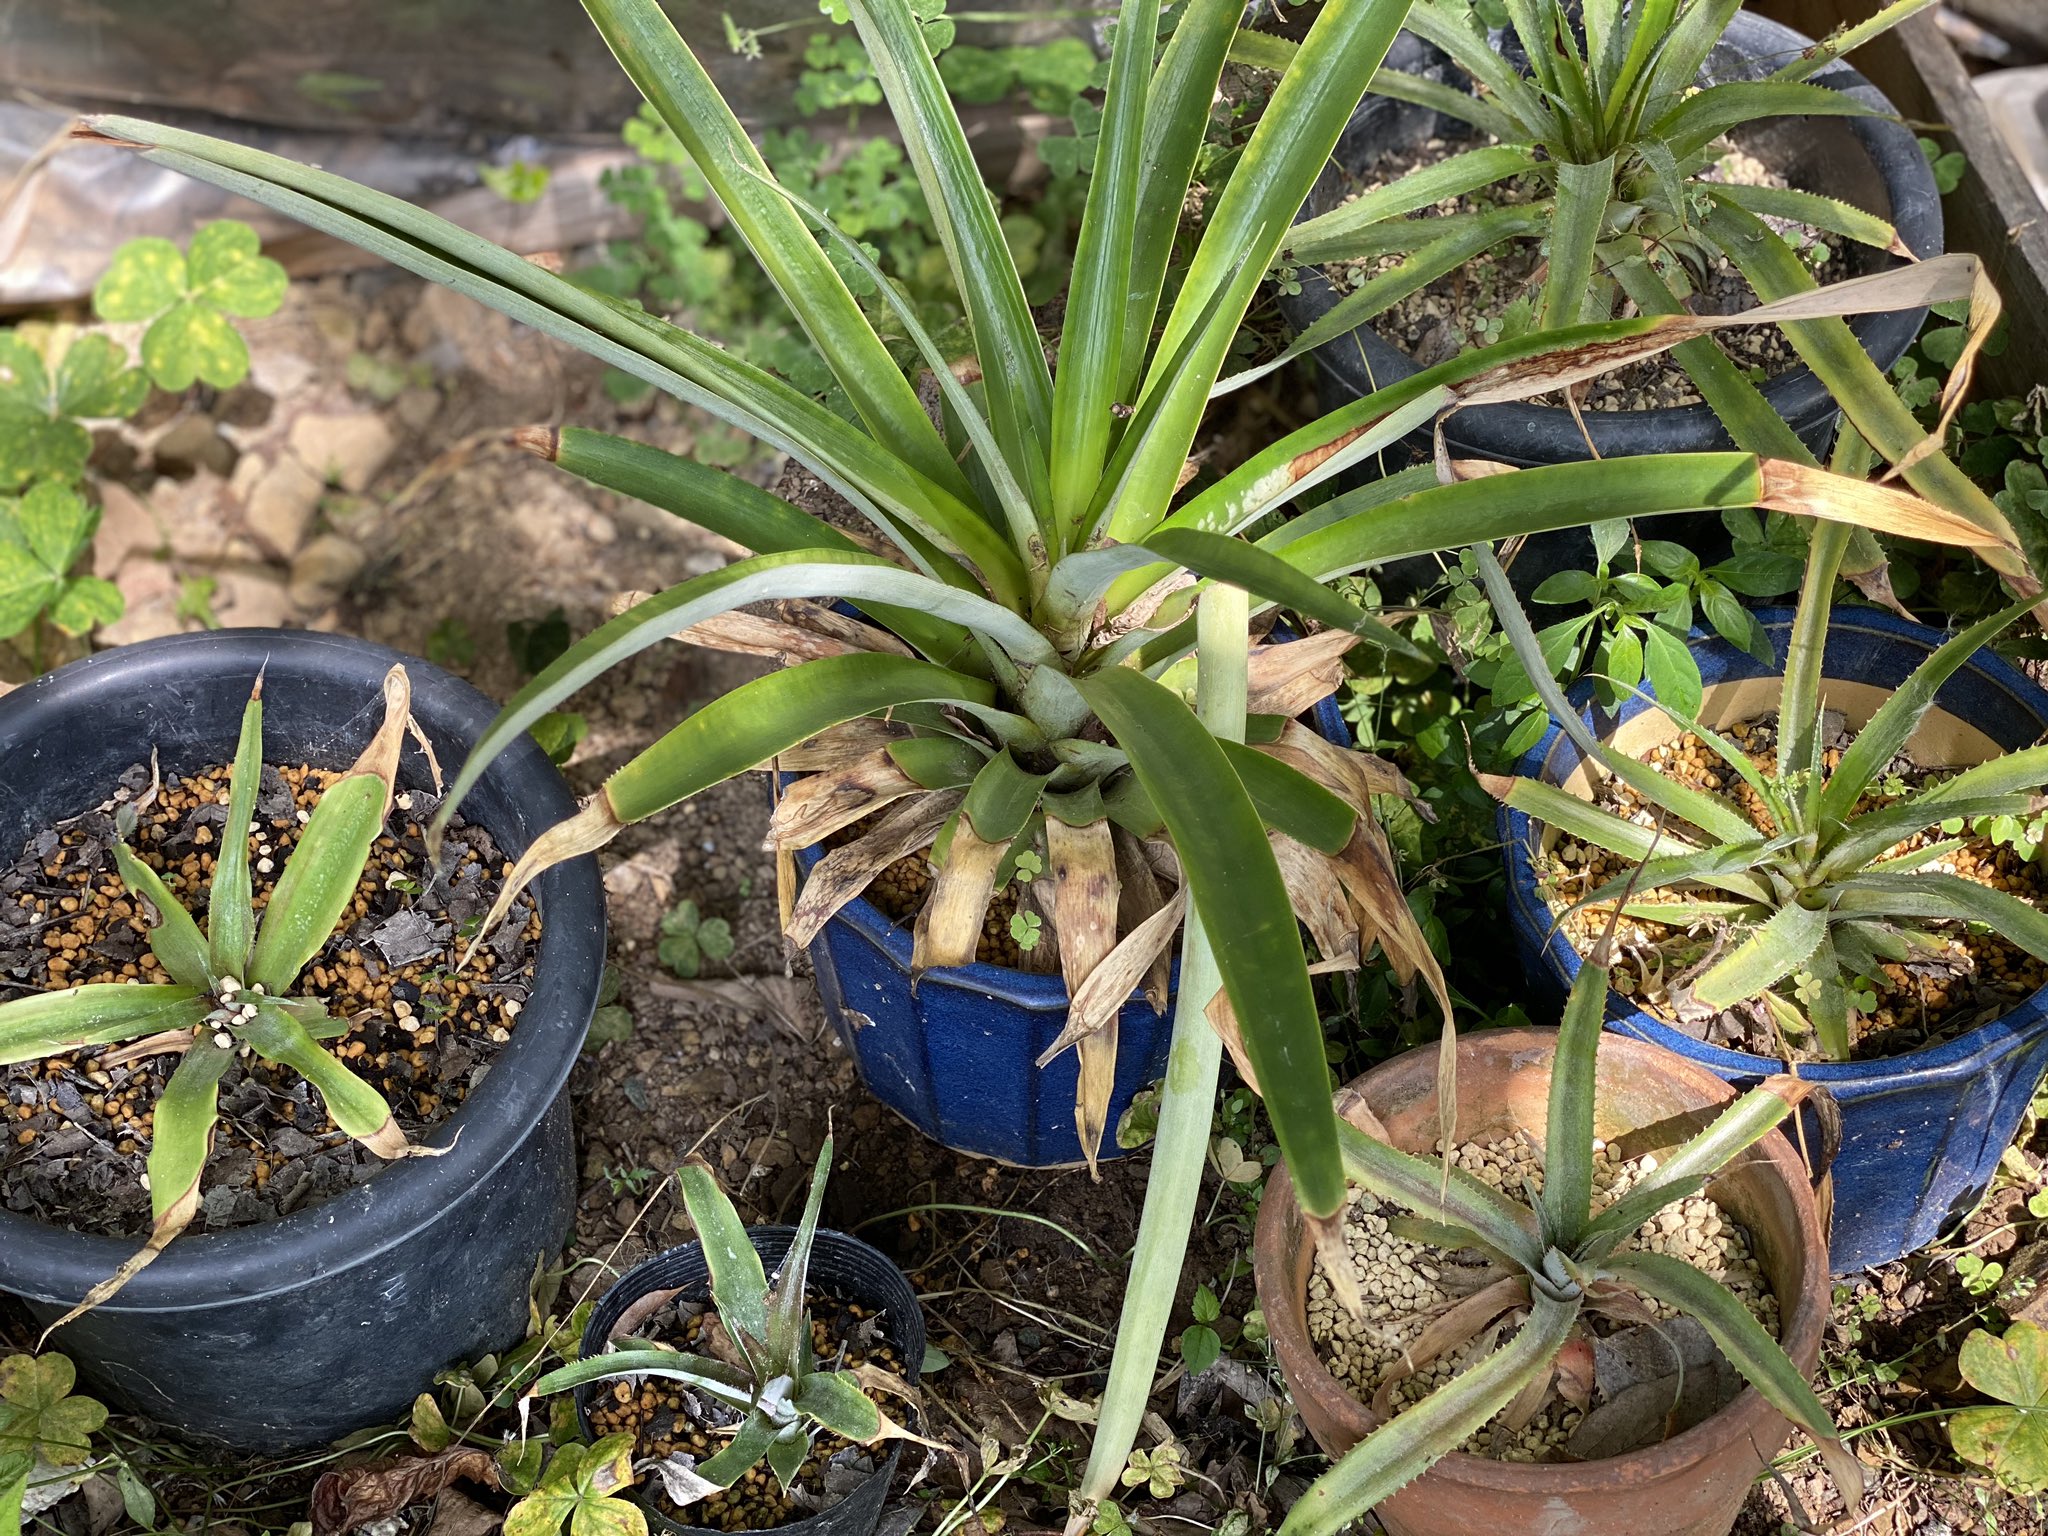 まい 買ってきたパイナップルにあった種をとって発芽はさせたけど 去年鉢植するのが早すぎて台風で飛んでったんだよなぁ パイナップル 種まき 家庭菜園 3枚目の写真はクラウン挿しで育ててるパイナップル